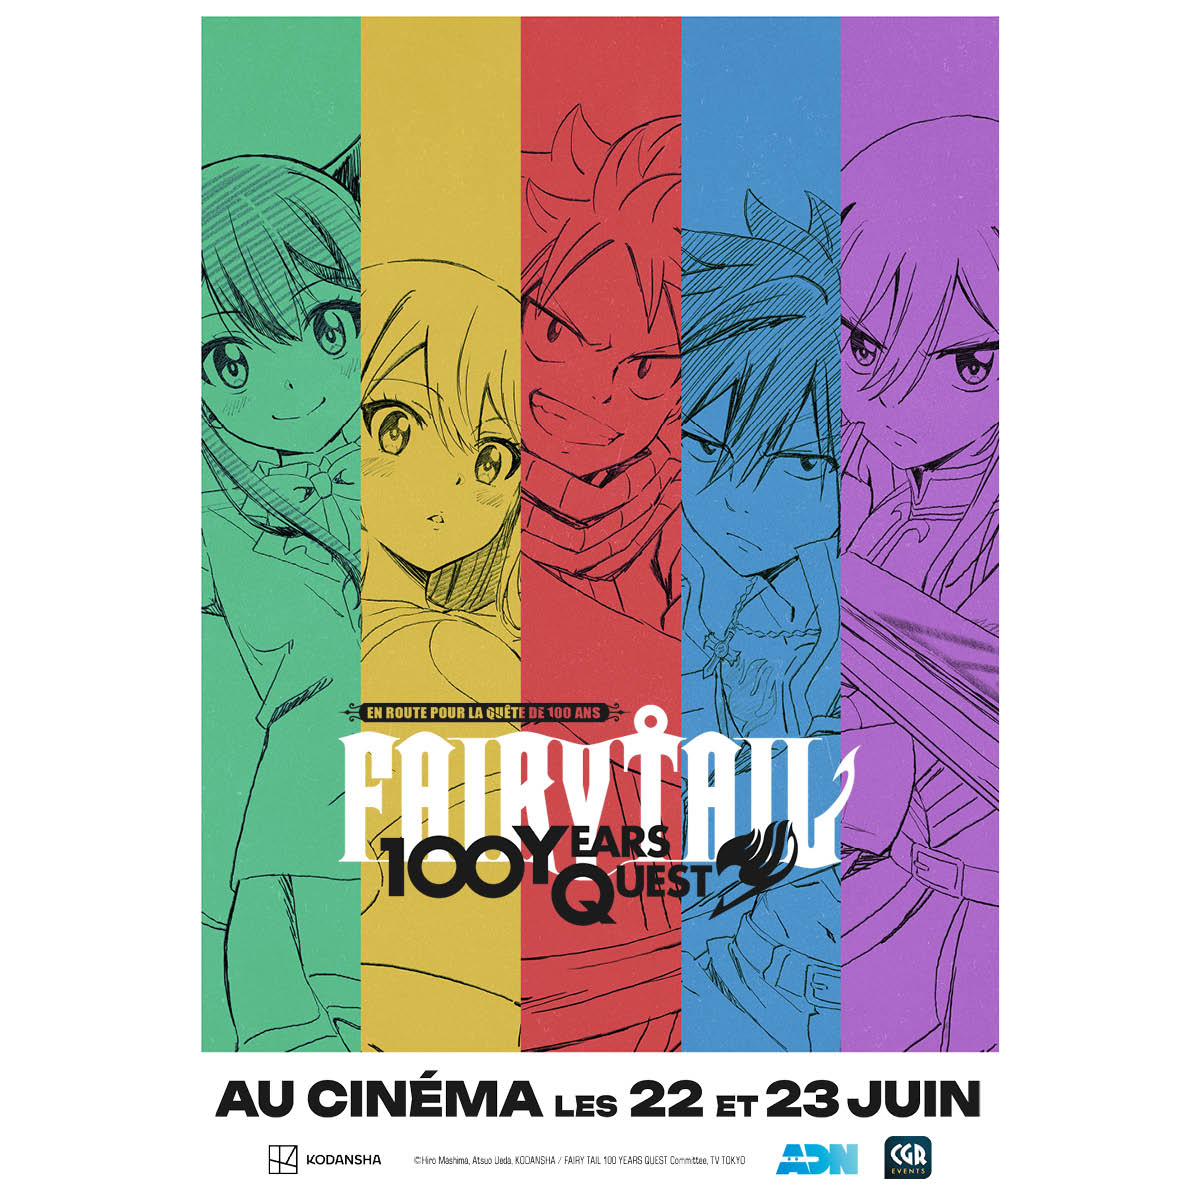 Les 3 premiers épisodes de #FairyTail100YearsQuest : En route pour la quête des 100 ans, seront diffusés au cinéma les 22 & 23 juin !! 🇫🇷

Un Évènement ADN et @CGR_Events, vente des billets dès le 30 mai à 16h🎟️